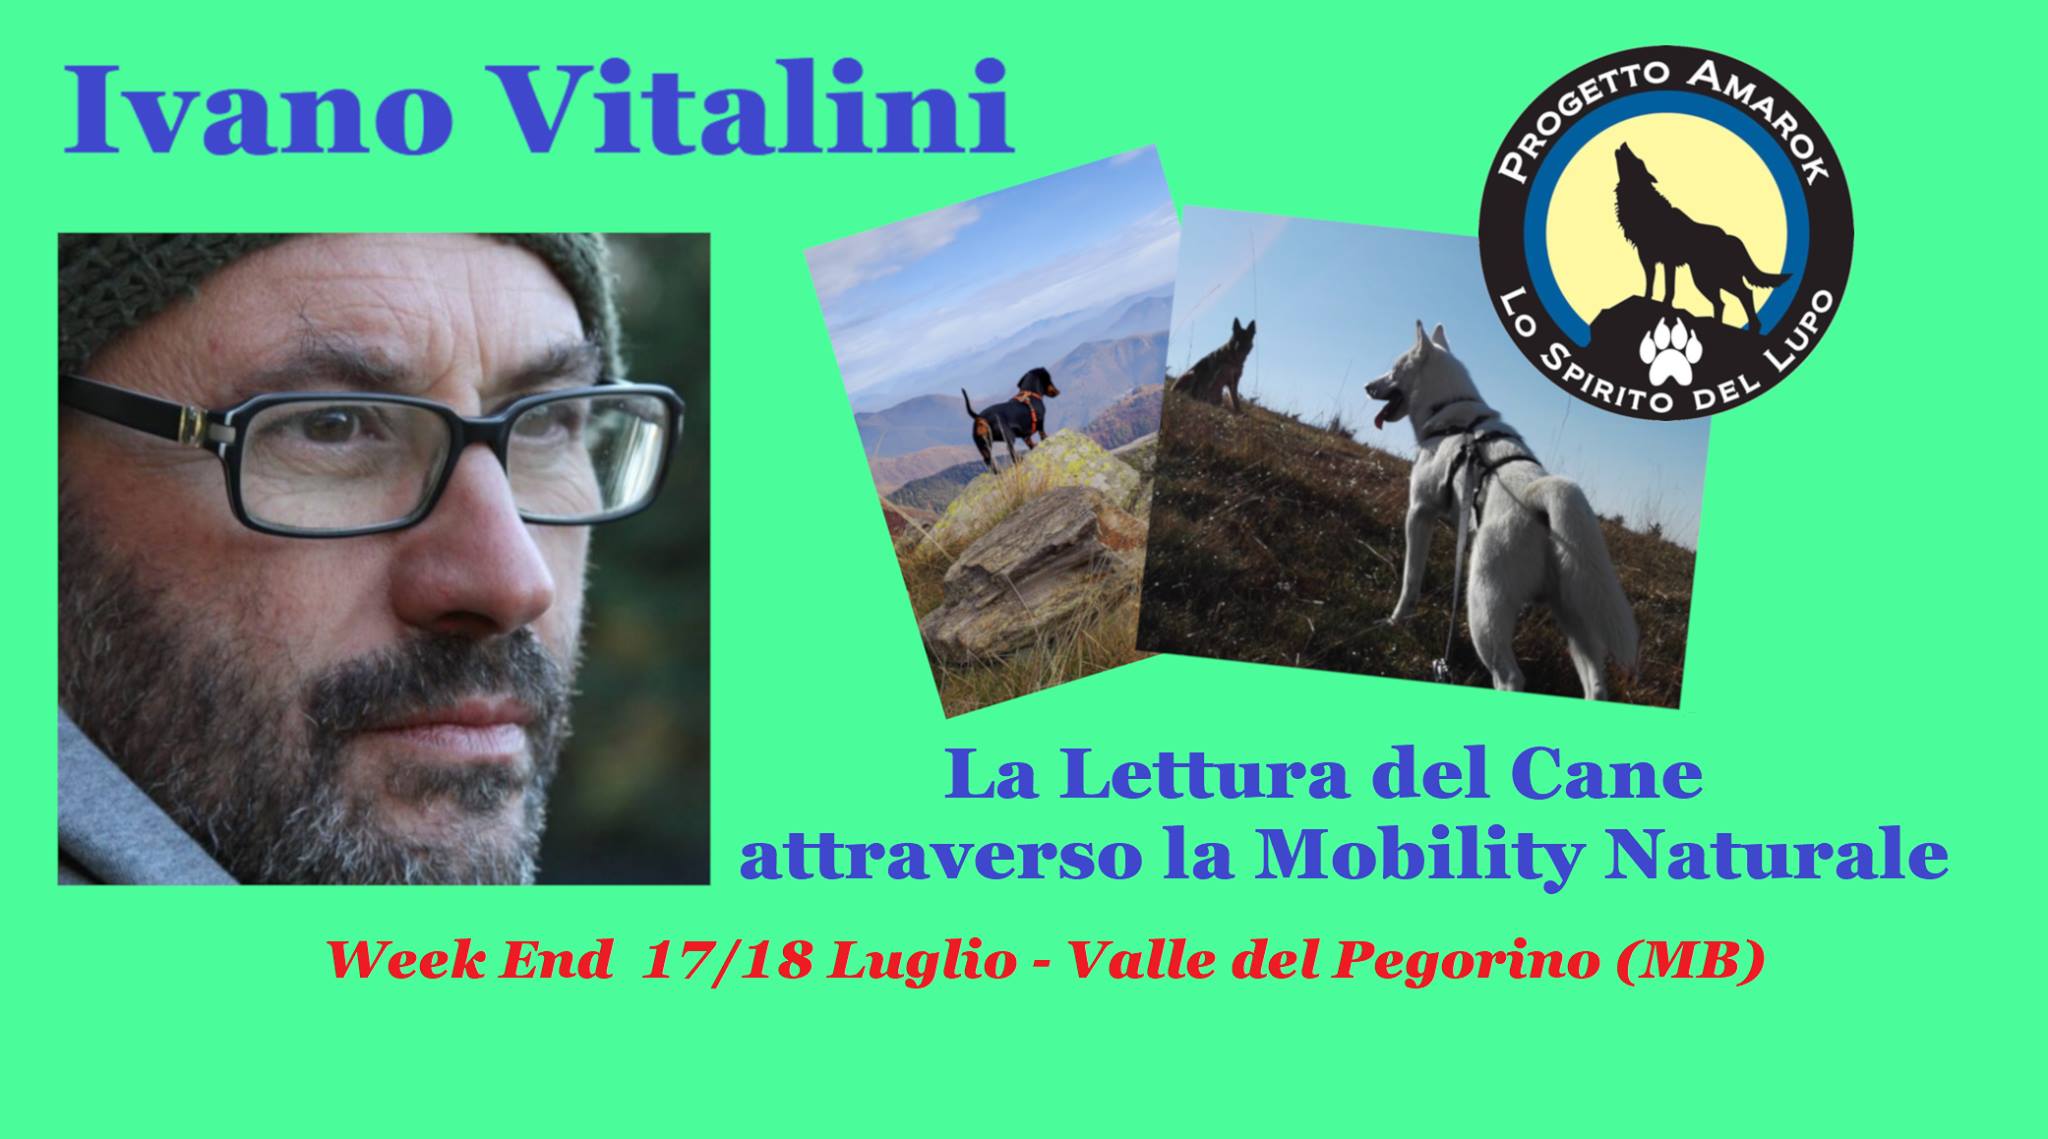 MONZA 17 e 18 Luglio 2021 - La Lettura del cane attraverso la Mobility con Ivano Vitalini